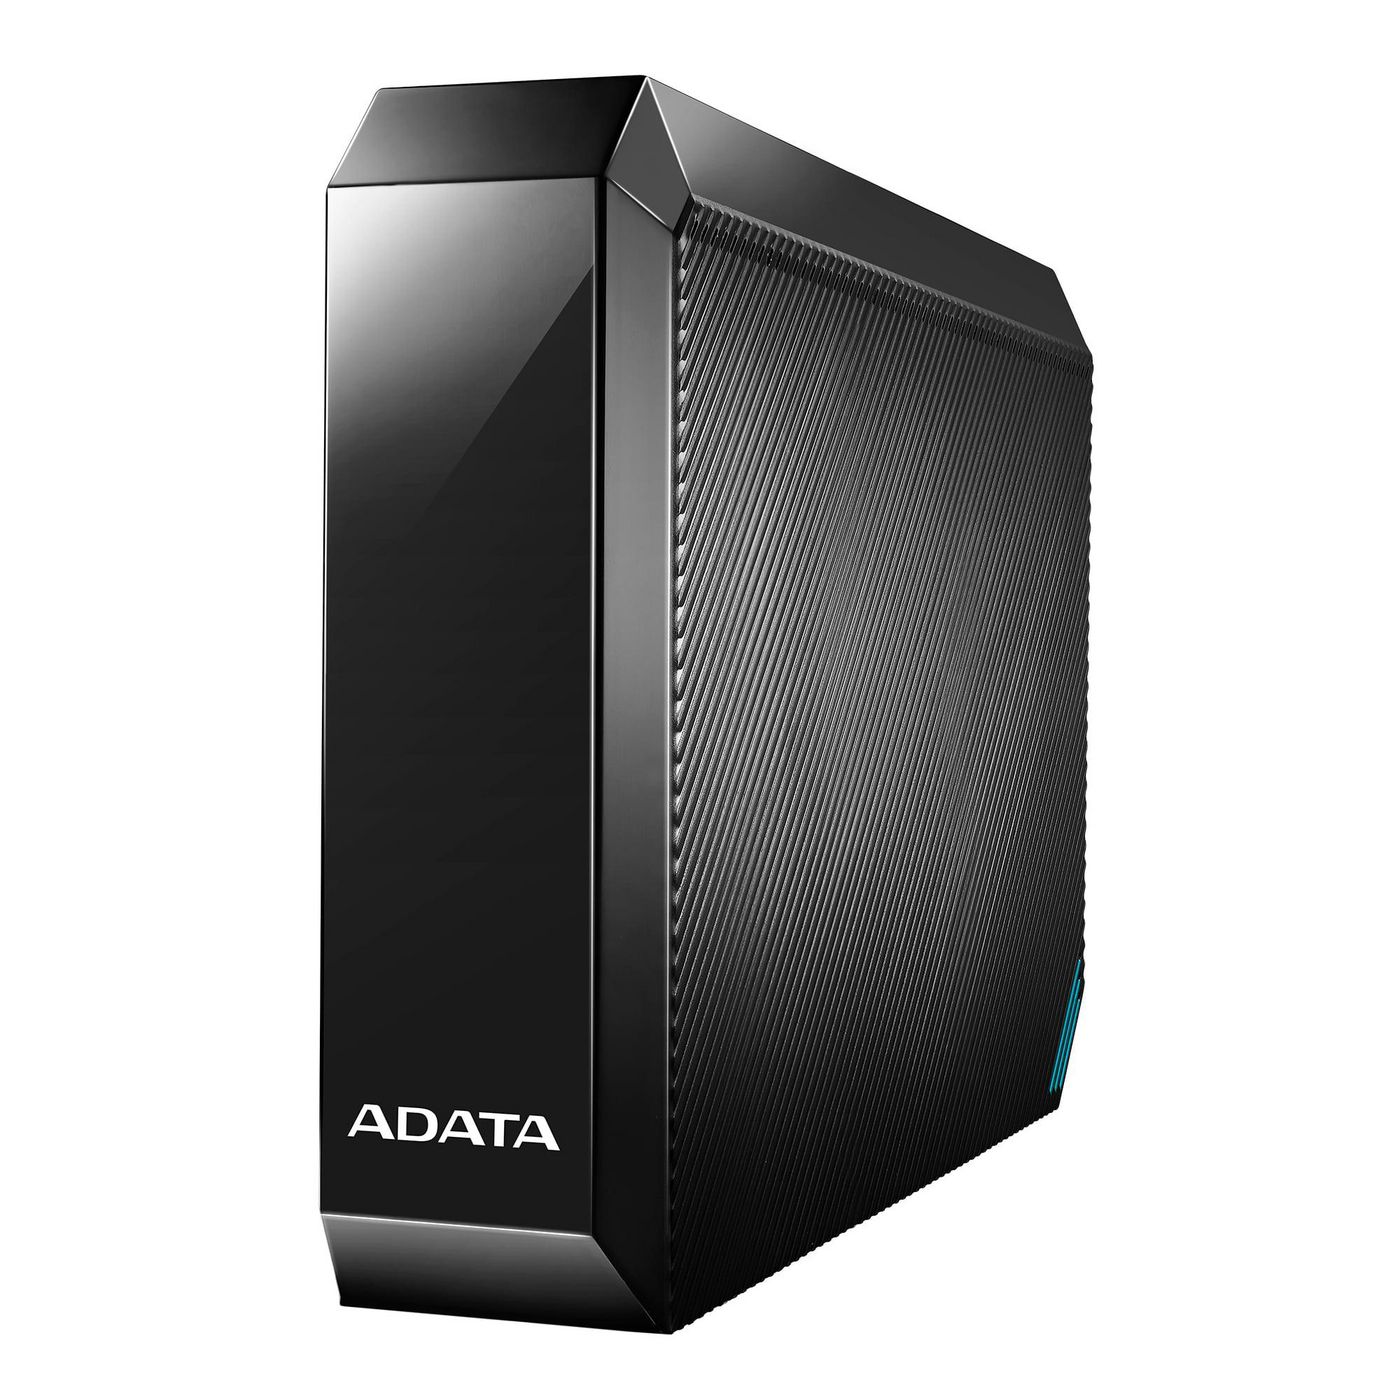 ADATA AHM800-6TU32G1-CEUBK W125977296 HM800 3.5 External HDD 6TB, 